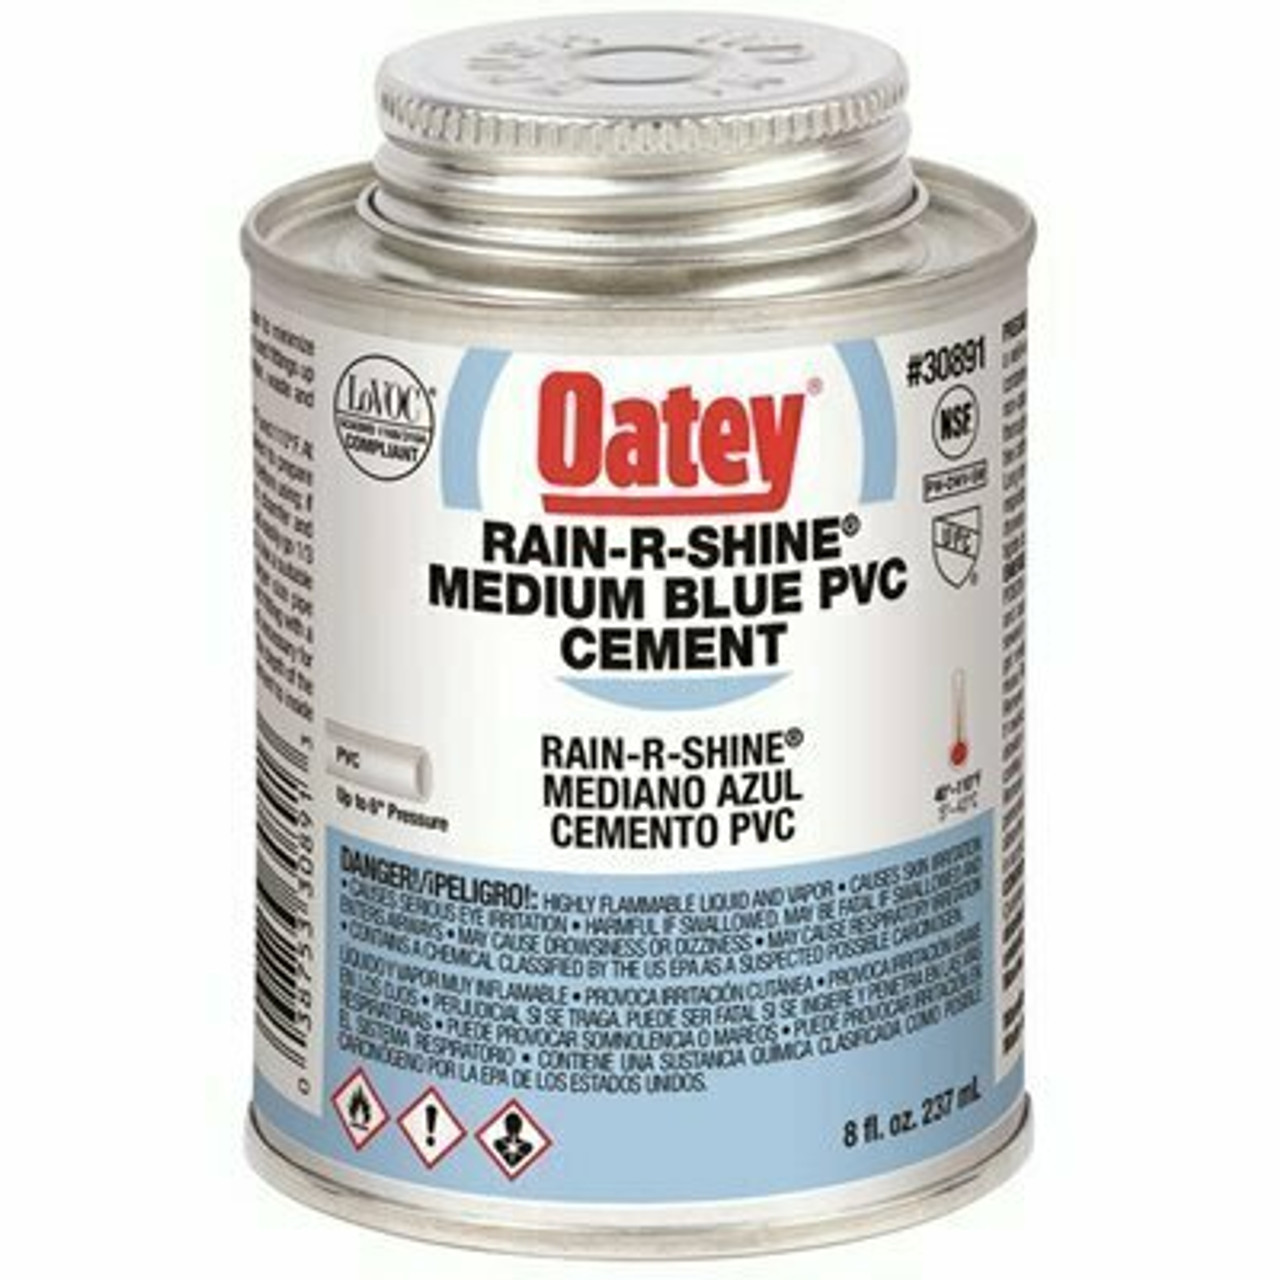 Oatey Rain-R-Shine 8 Oz. Medium Blue Pvc Cement